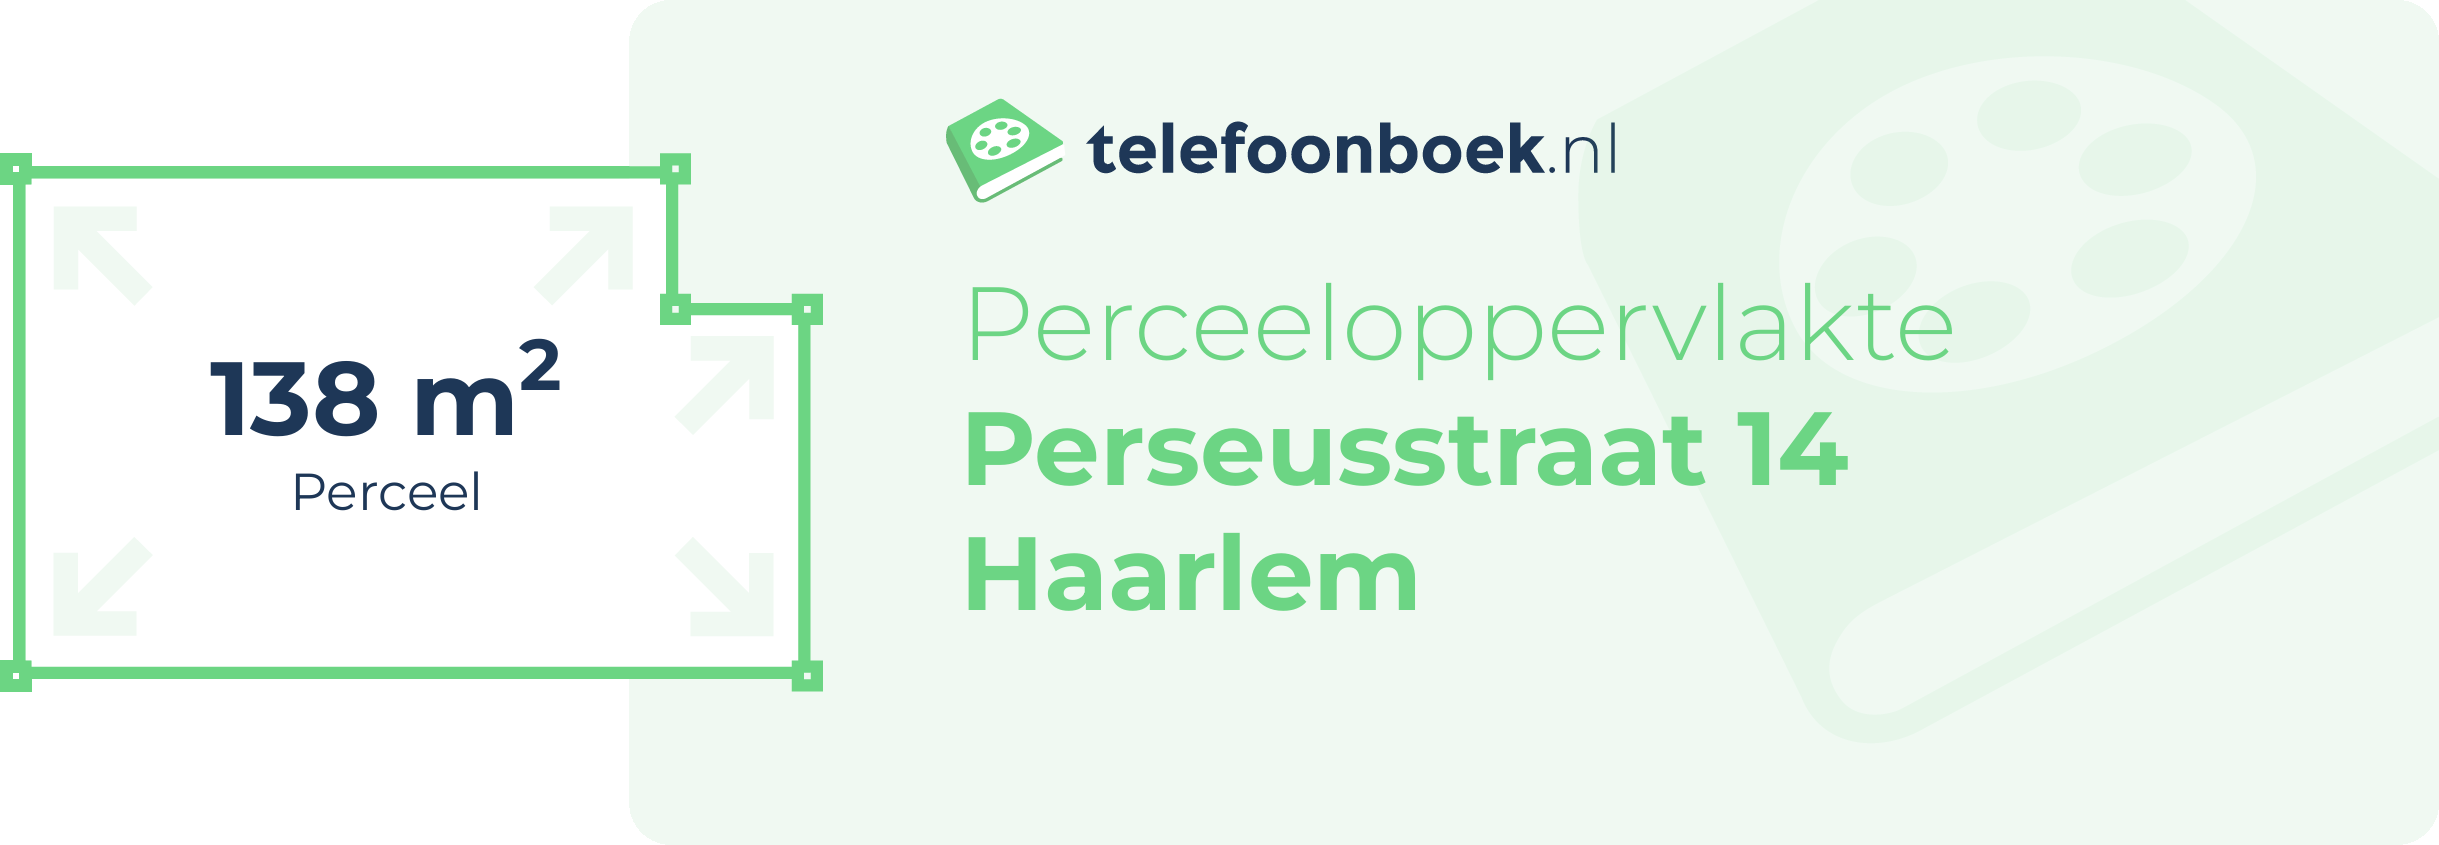 Perceeloppervlakte Perseusstraat 14 Haarlem